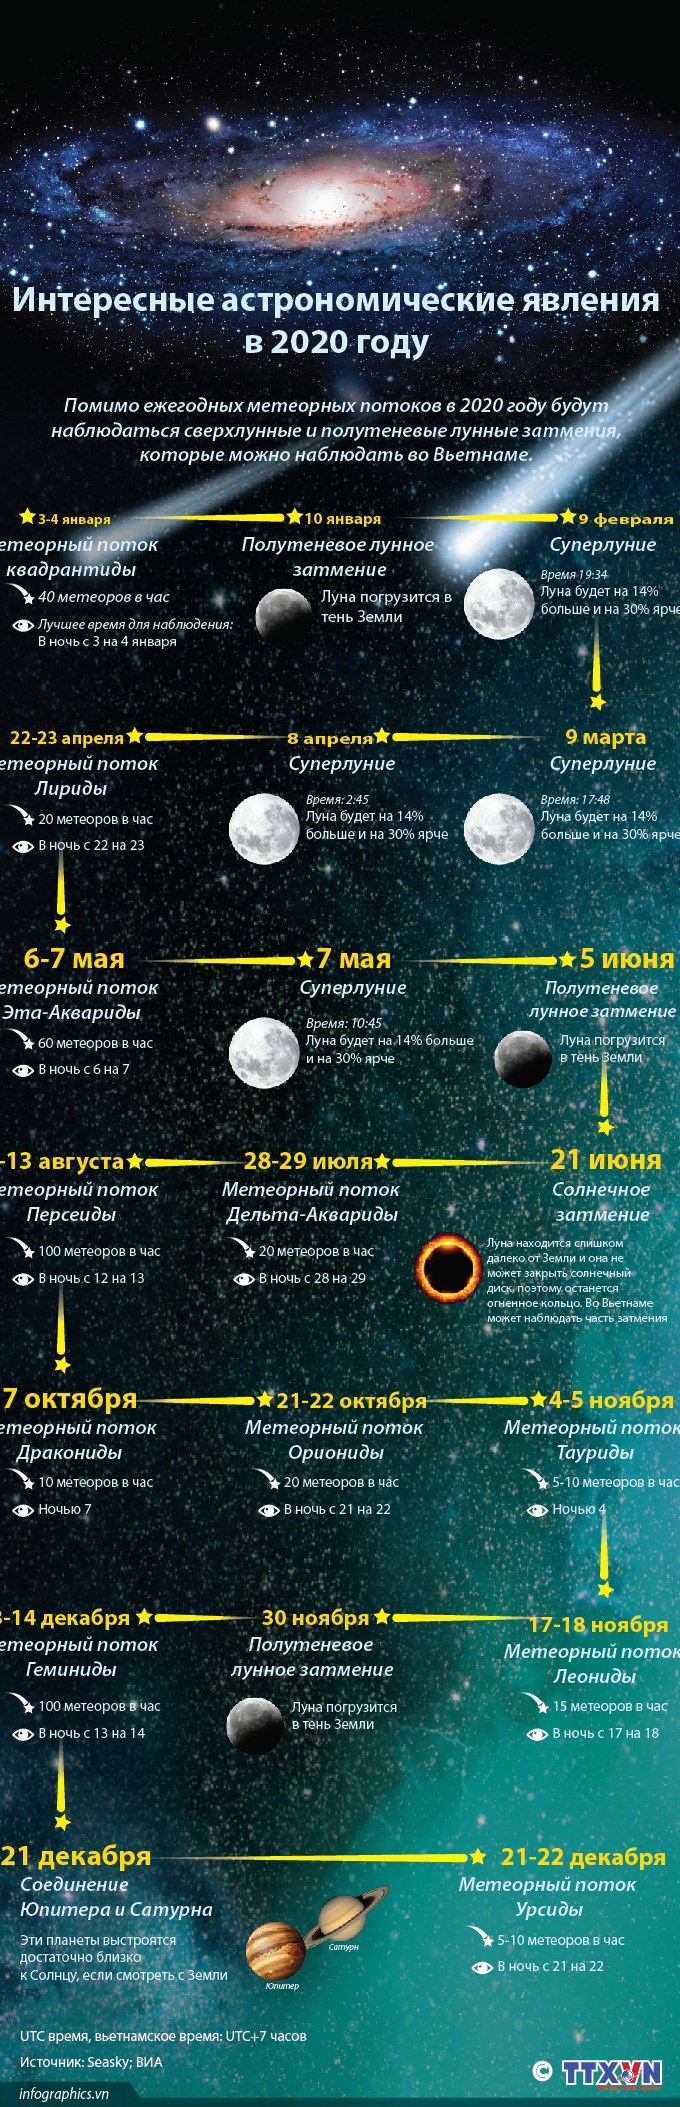 Интересные астрономические явления в 2020 году hinh anh 1